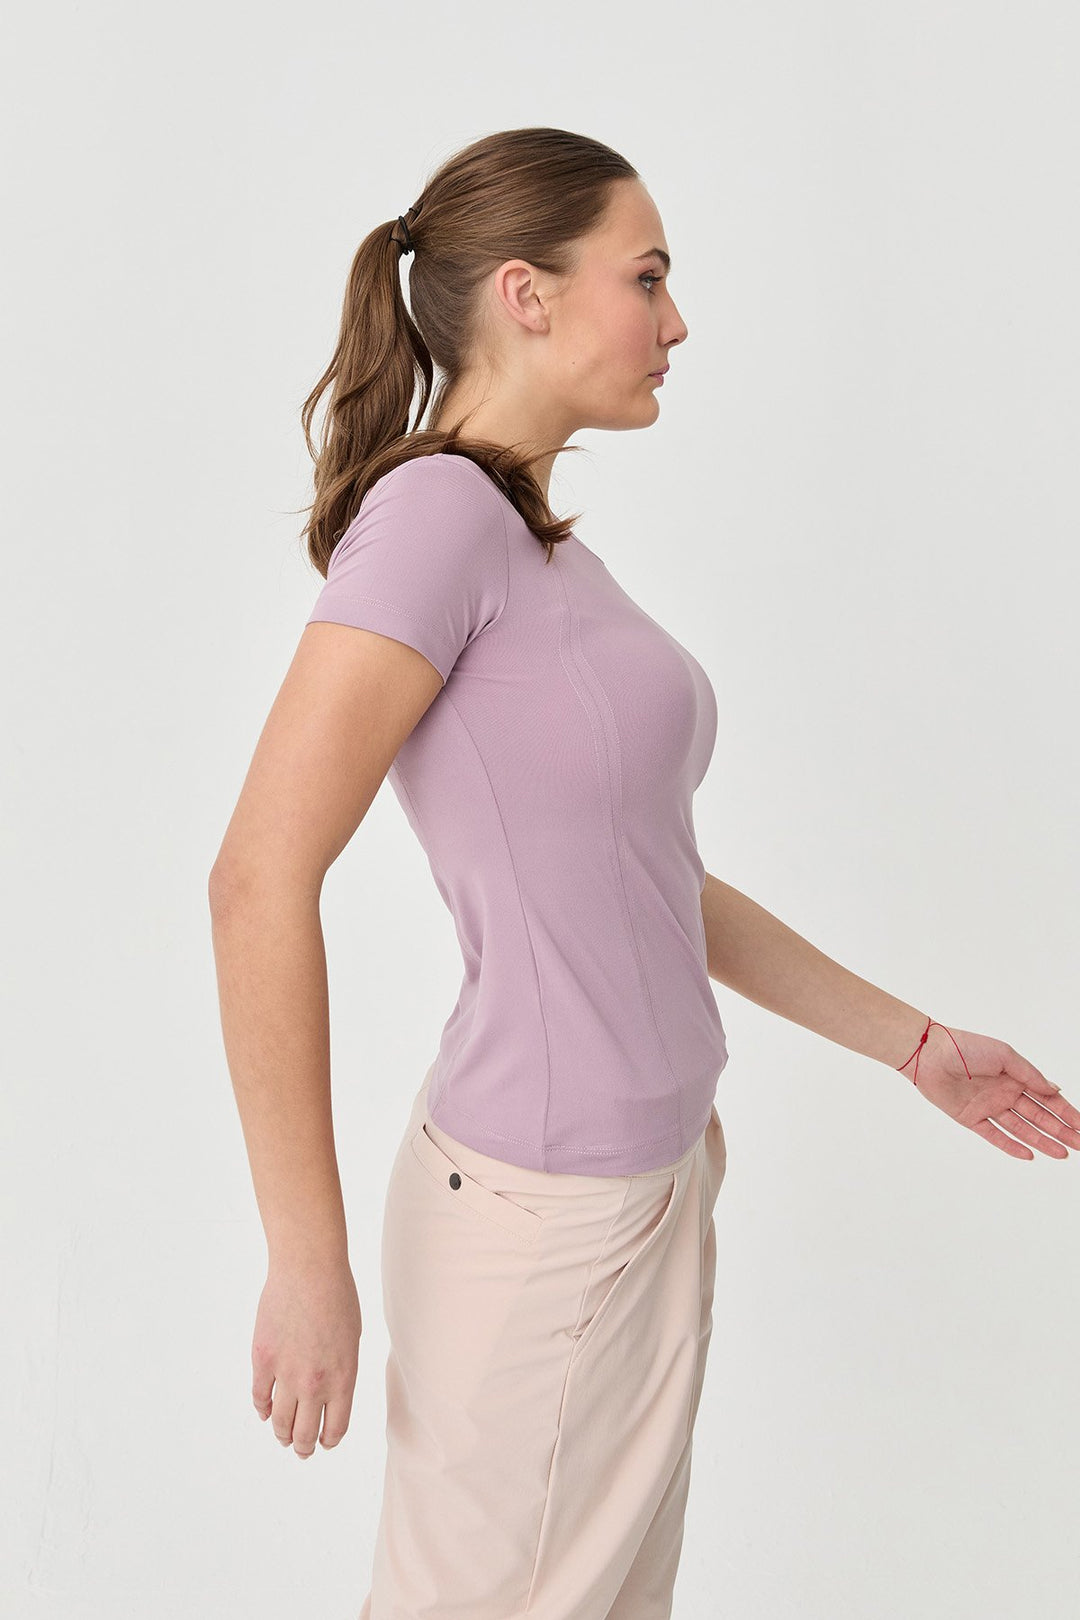 Weiches, strukturiertes Body-T-Shirt für Damen